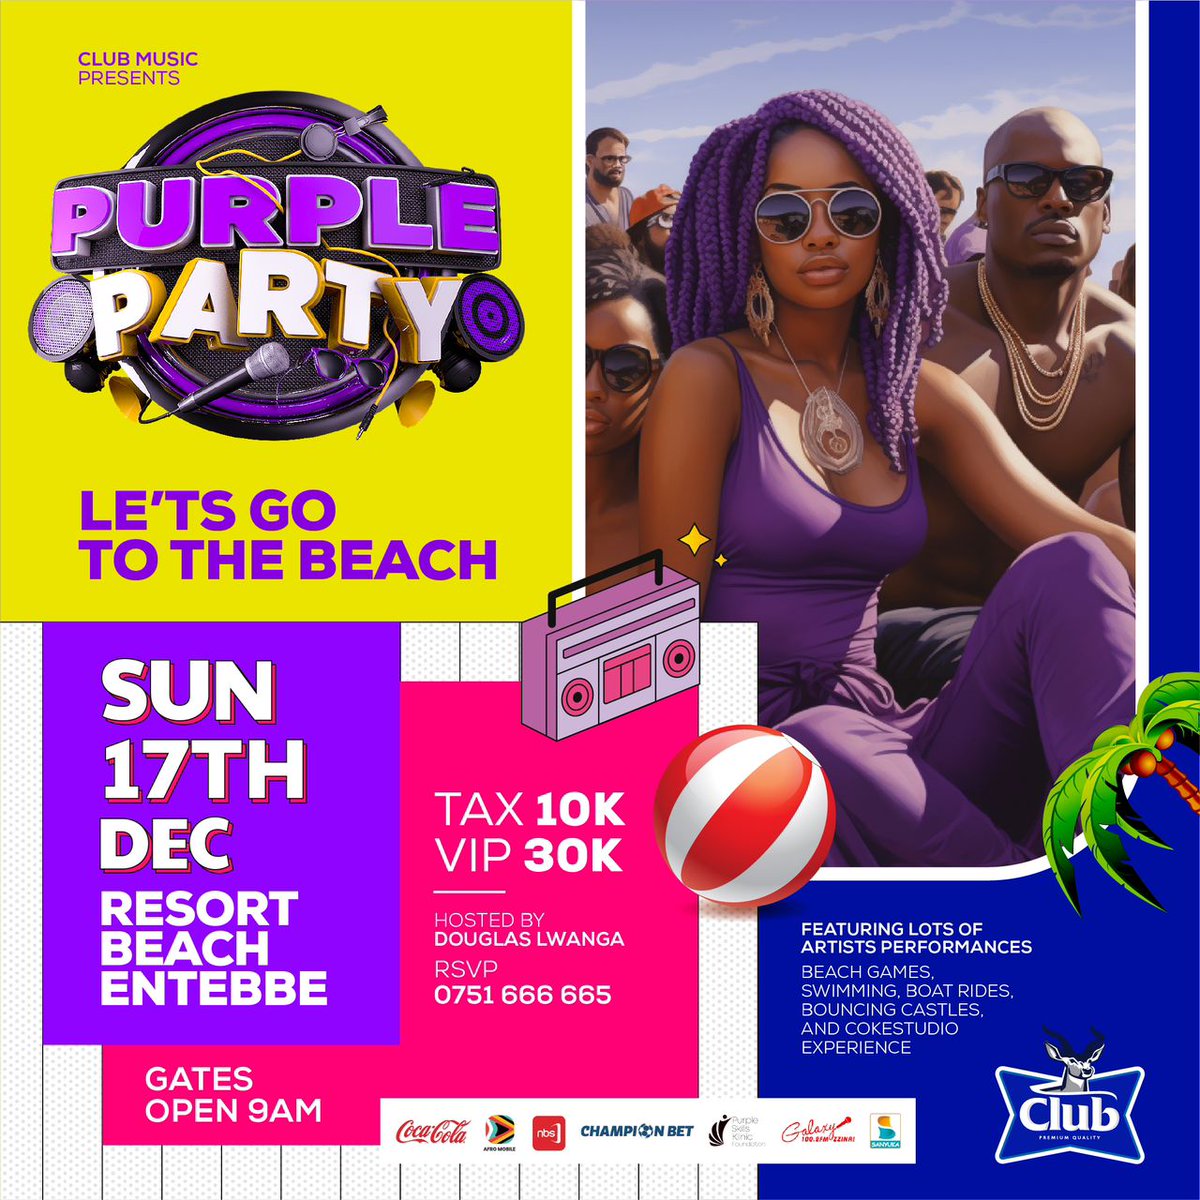 Entebbe Tujja Tujja! Let's go to the beach | Sun 17 December | Resort Beach Entebbe #PurplePartyTour